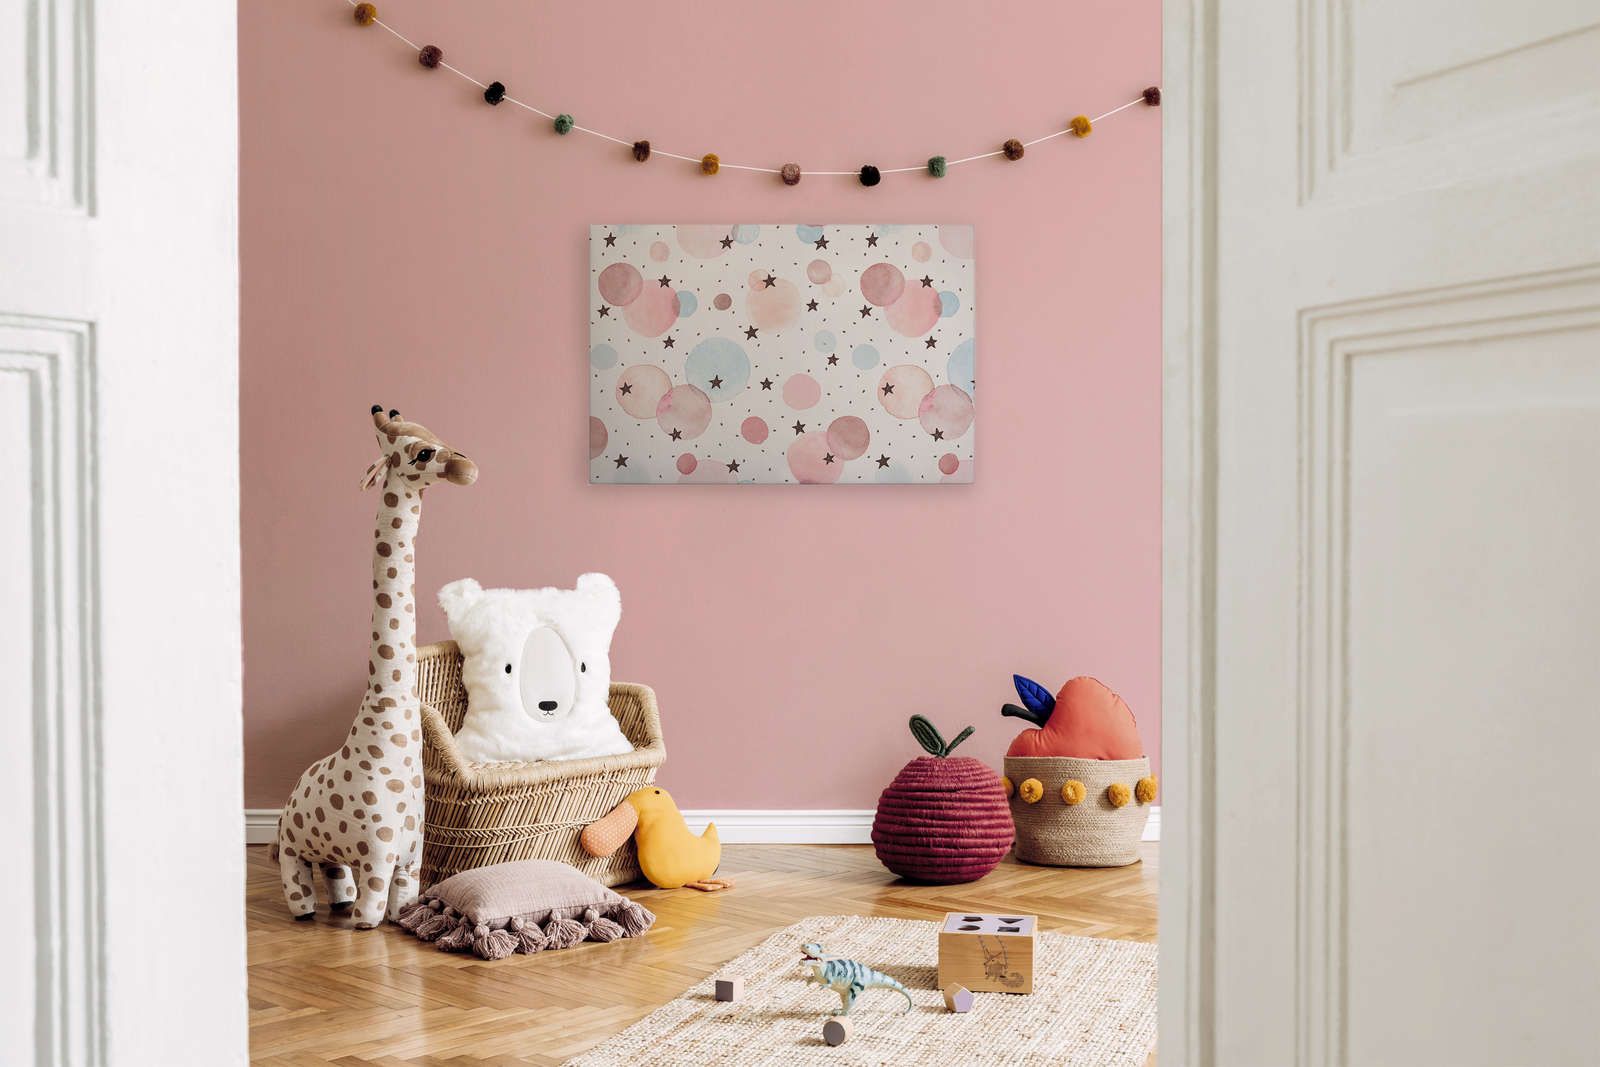             Tela per la camera dei bambini con stelle, punti e cerchi - 90 cm x 60 cm
        